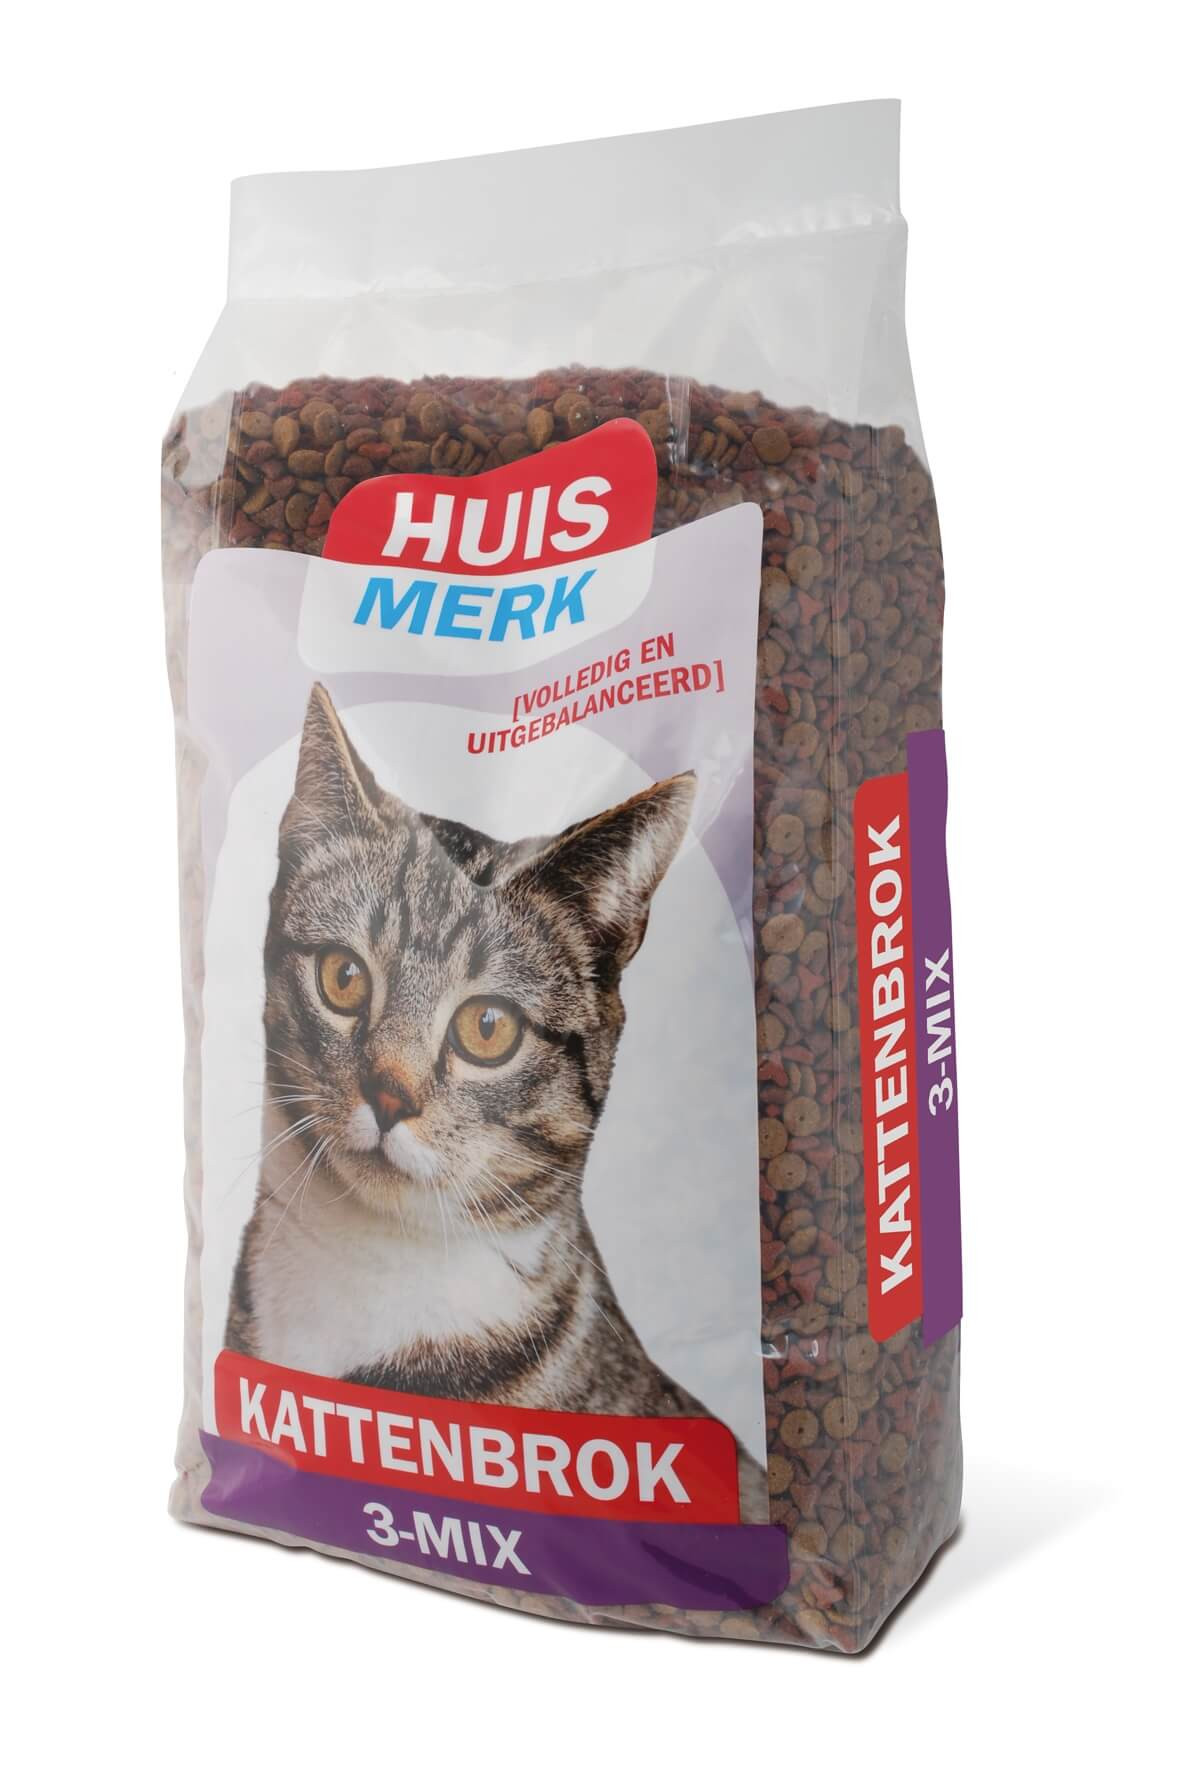 Huismerk Krokant Kattenbrok 3-Mix 10kg € 23.95